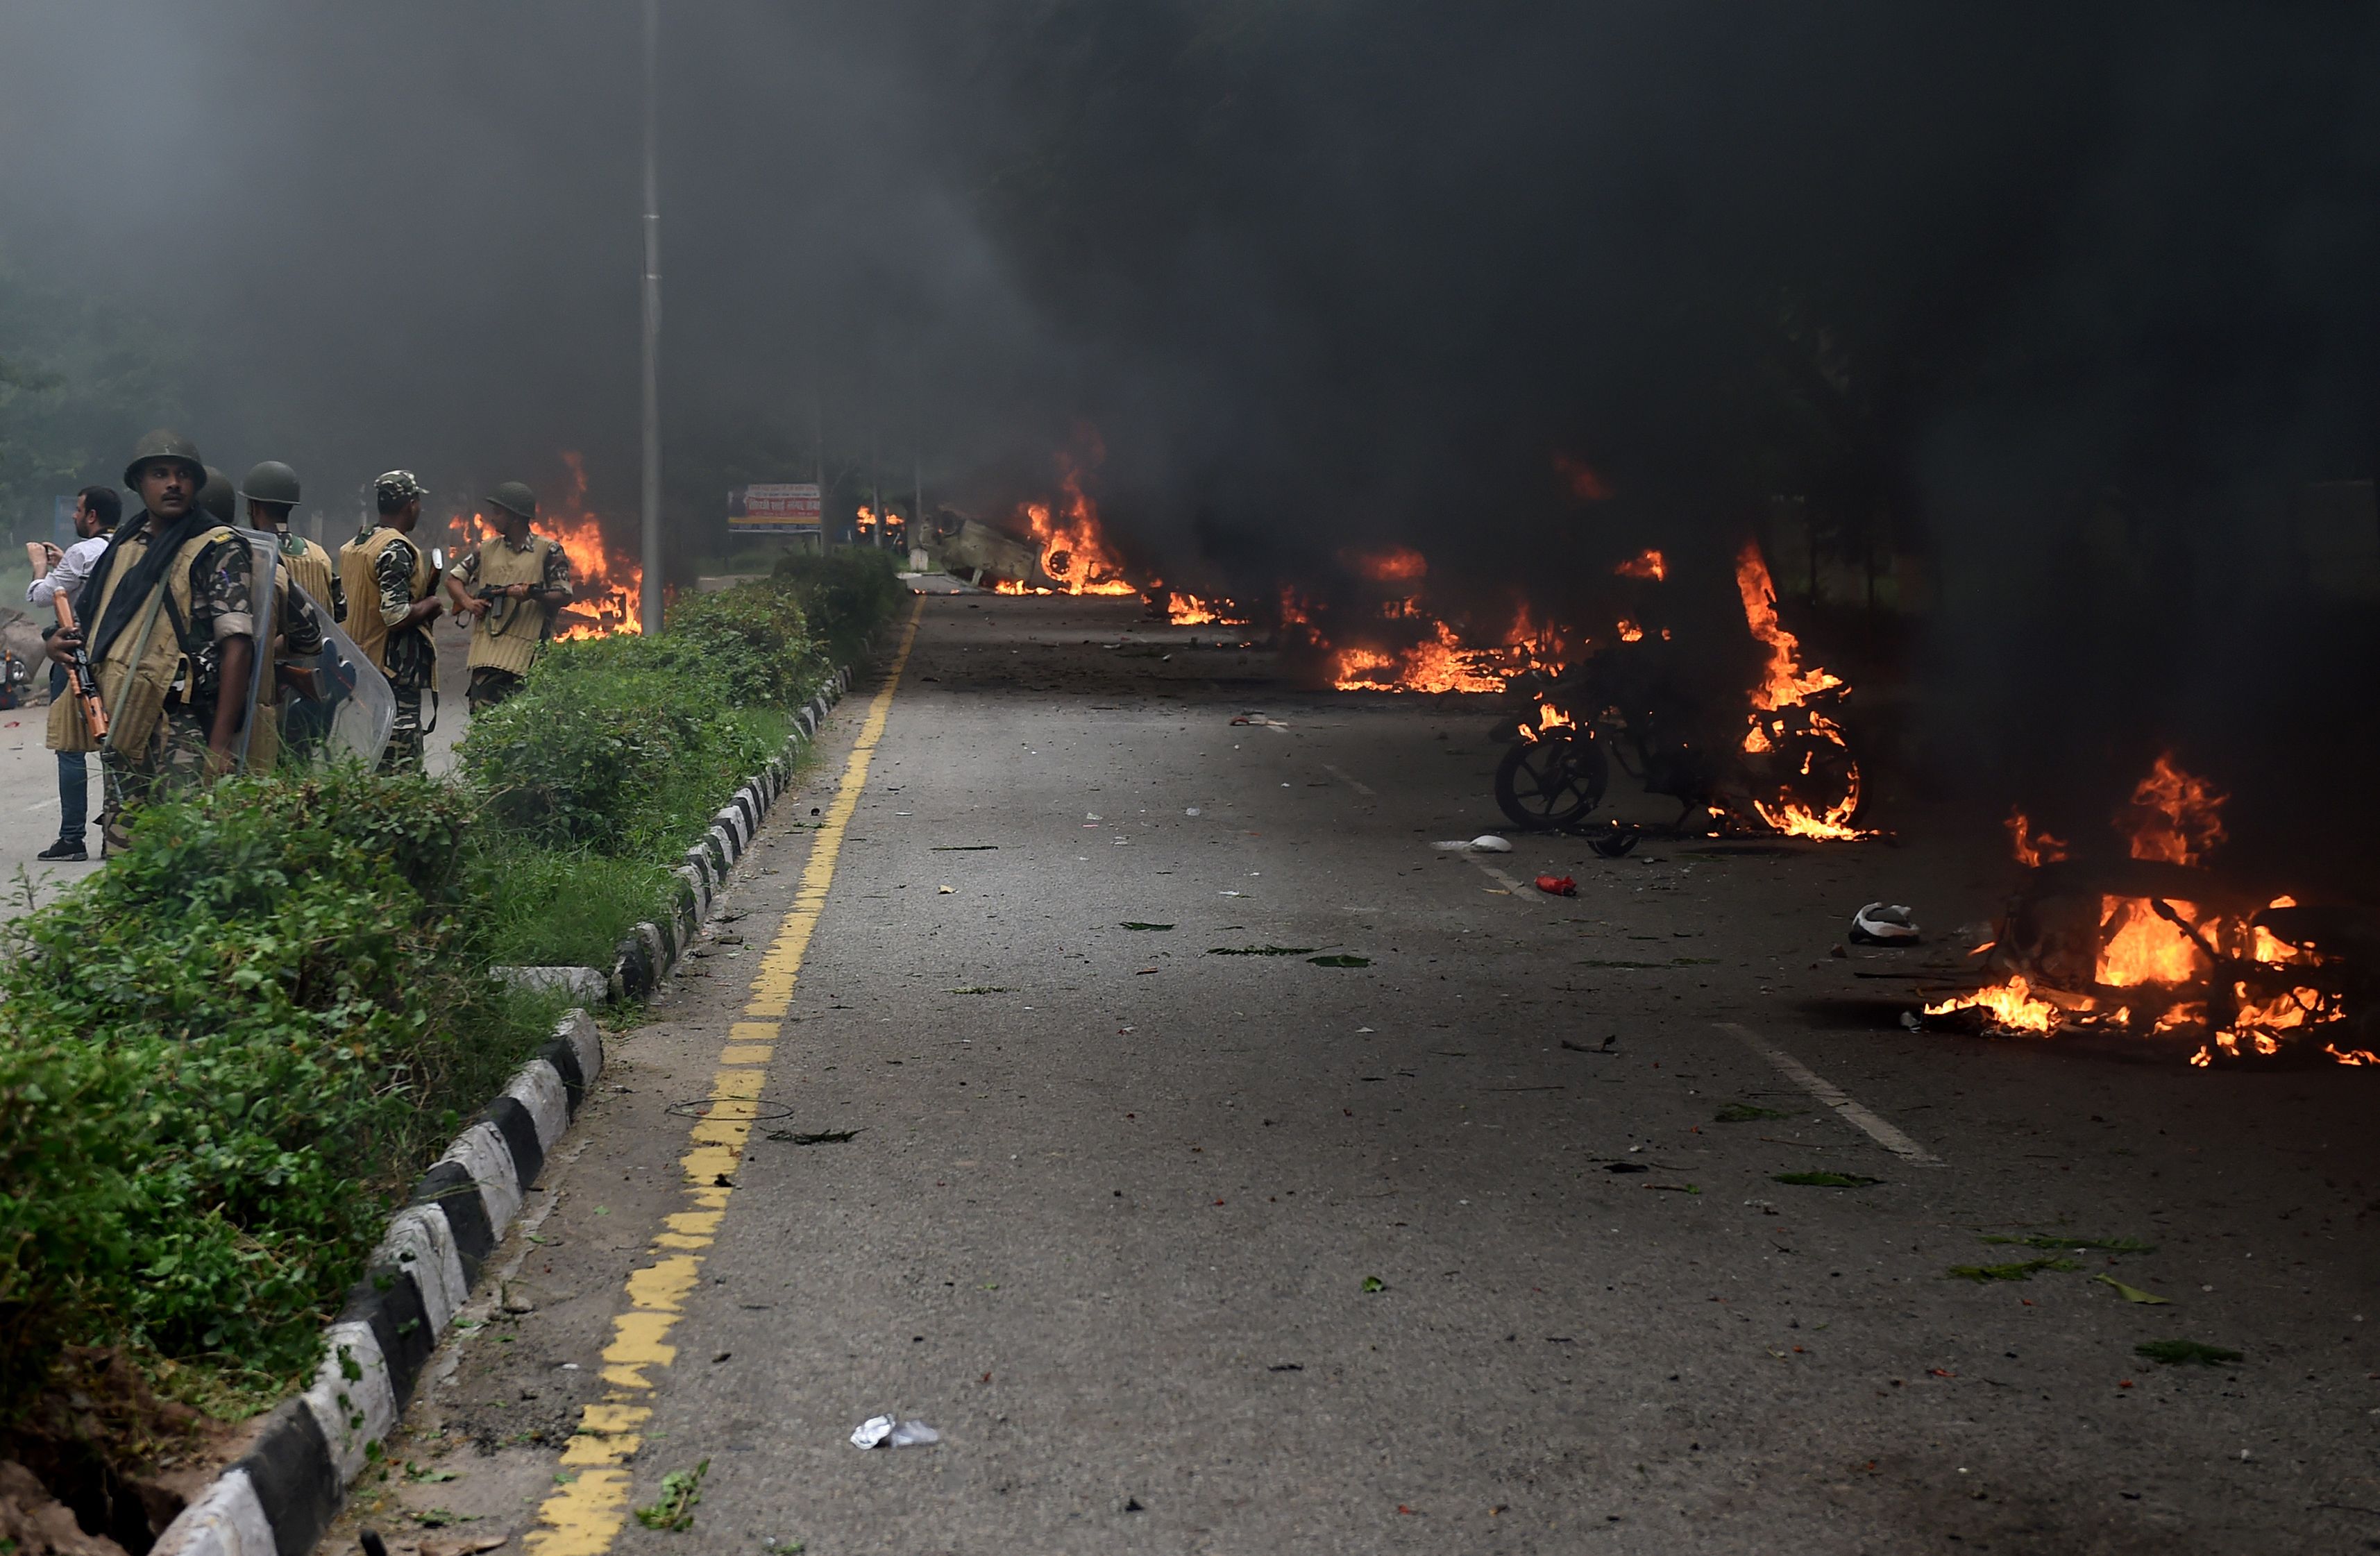 رجال الأمن الهنود قرب السيارات المحترقة